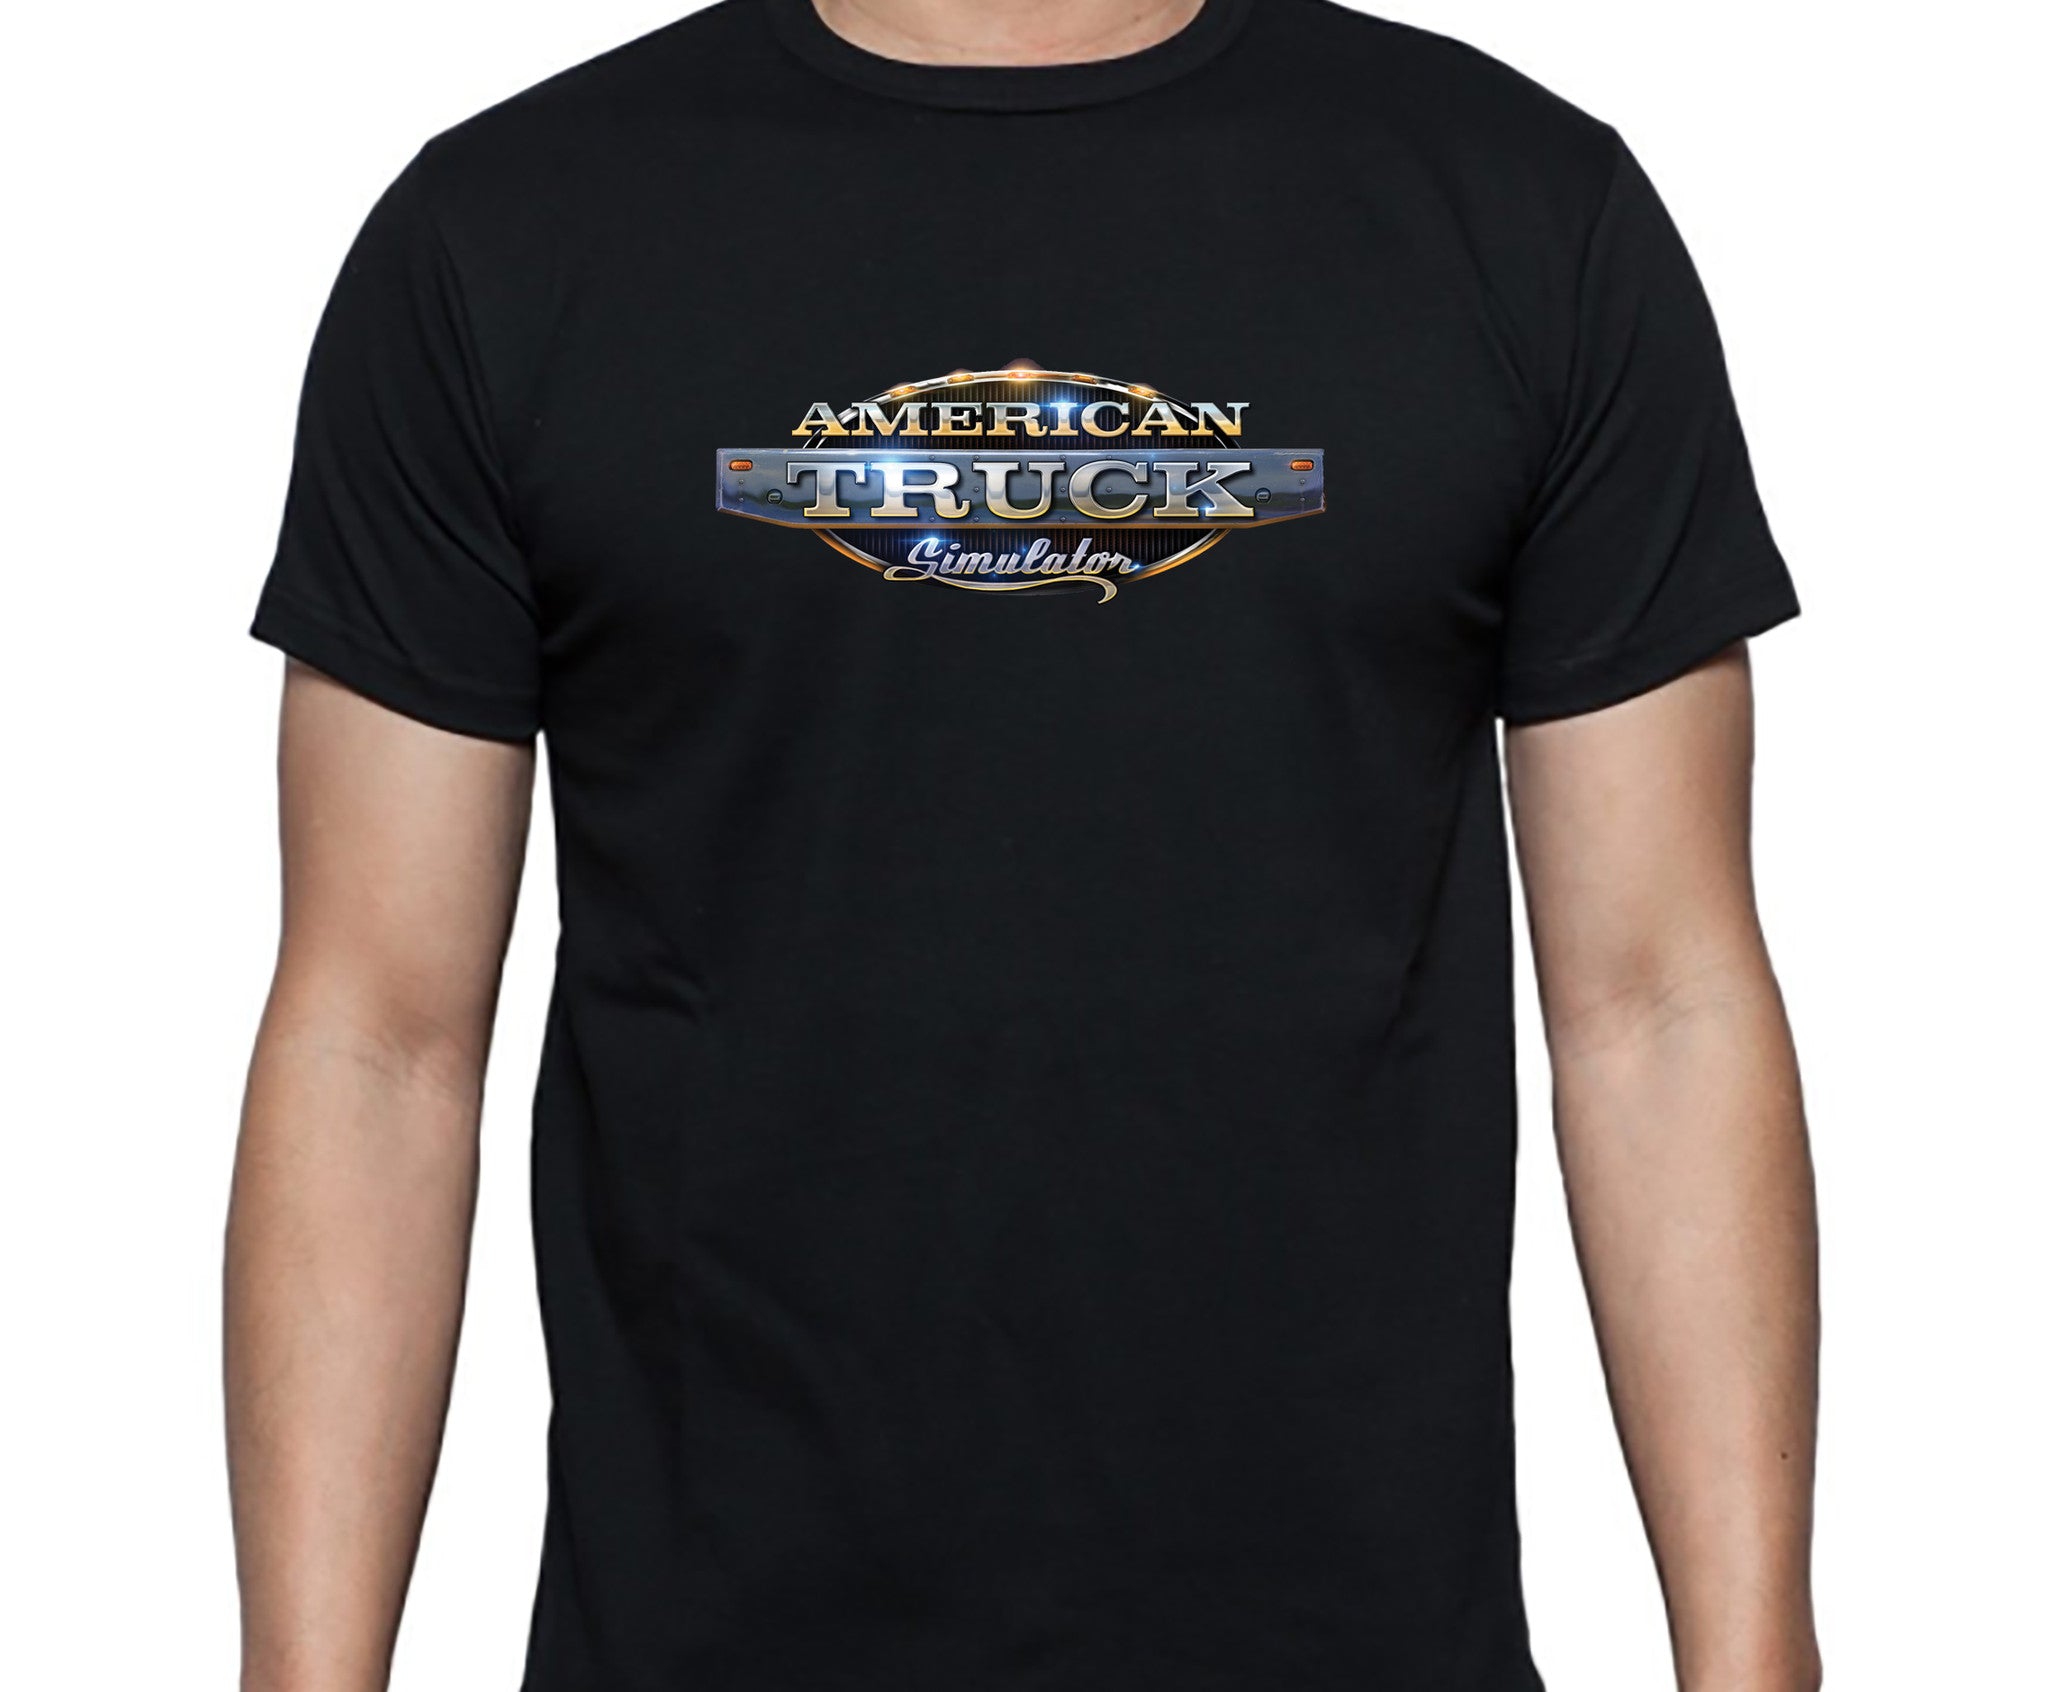 American Truck Simulator T-Shirt - Excalibur
